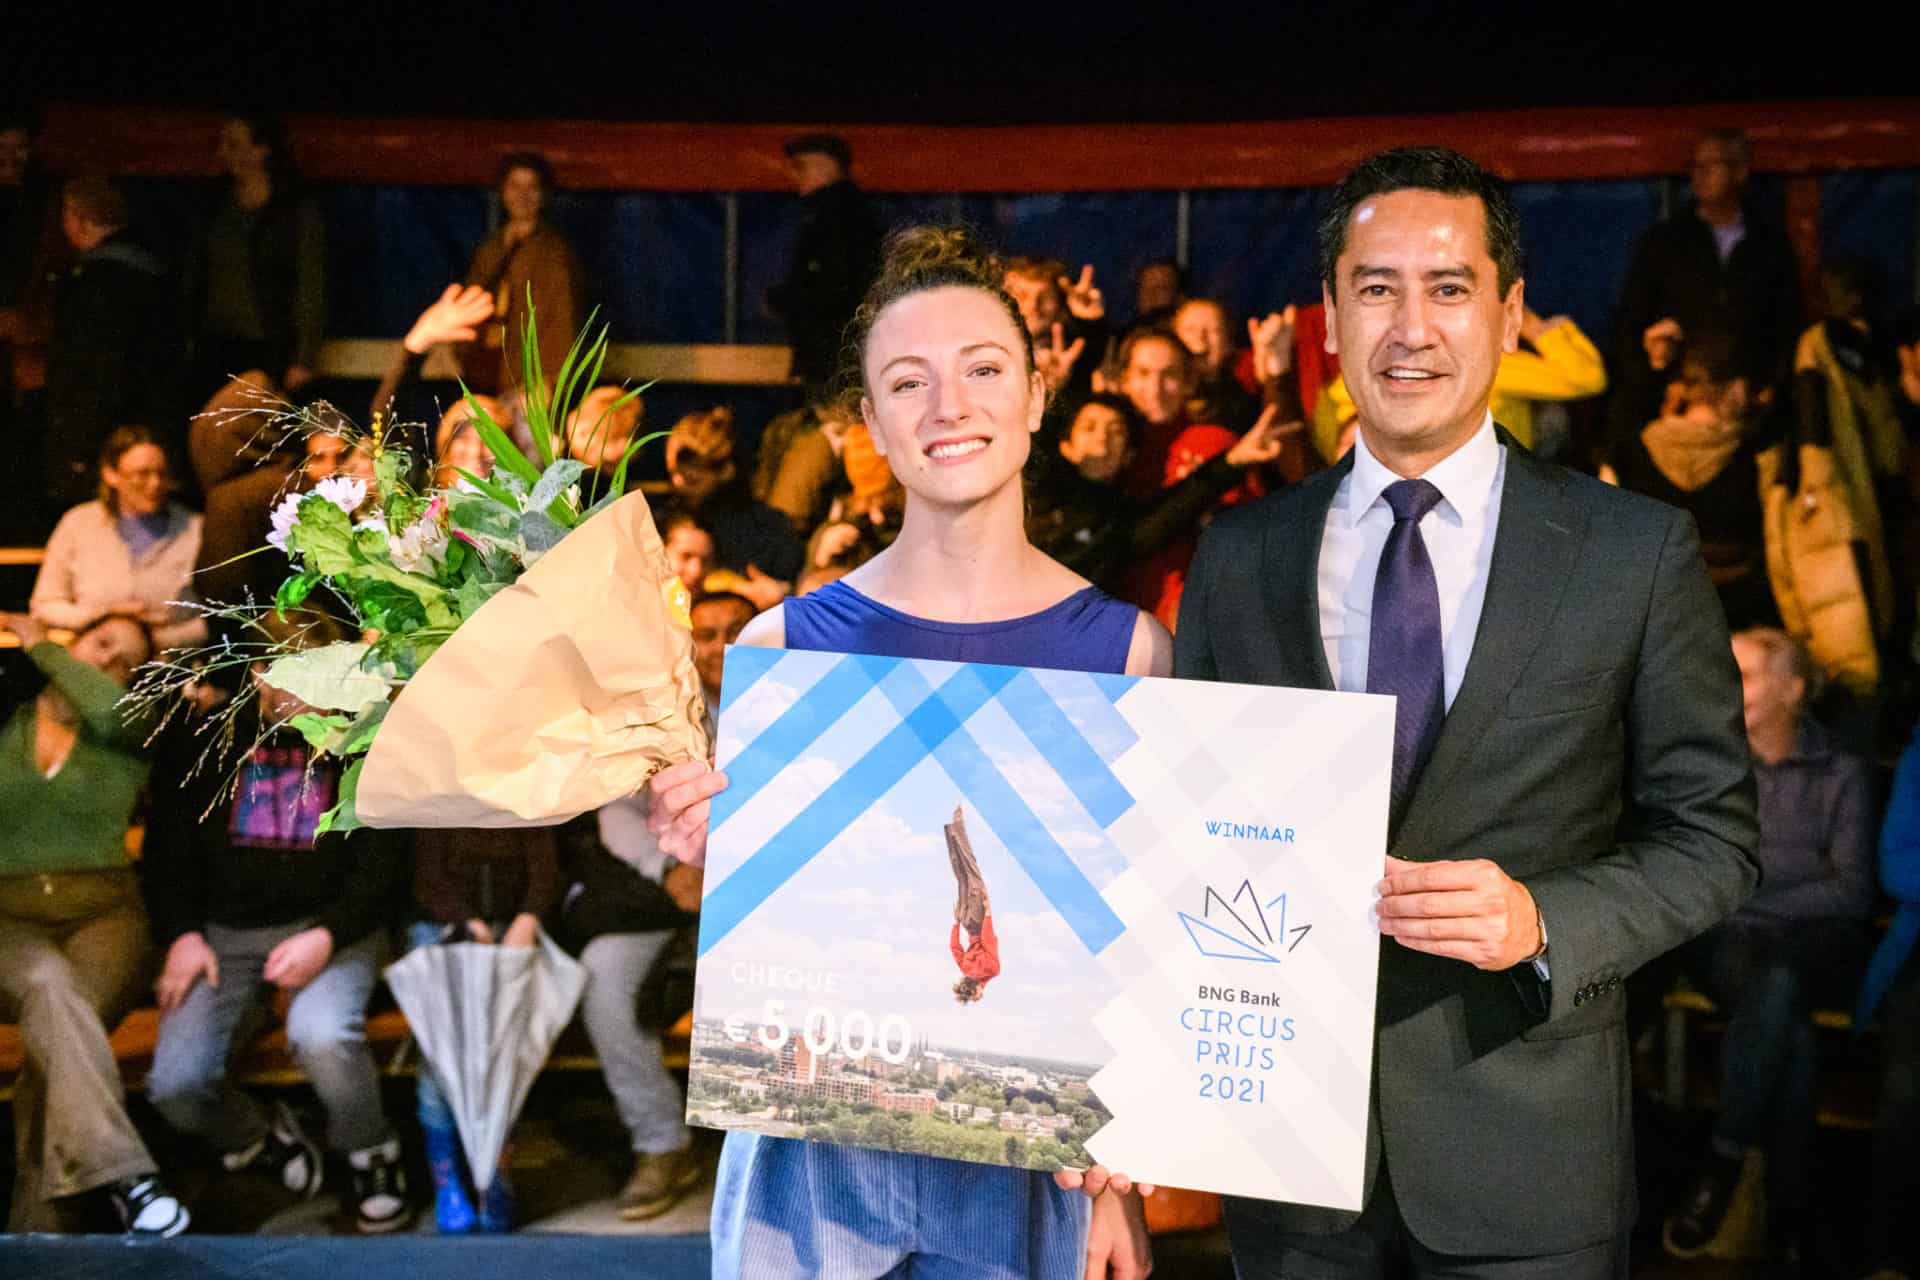 Melody Nolan winnaar BNG Bank Circusprijs 2021.  Foto: Jostijn Ligtvoet Fotografie